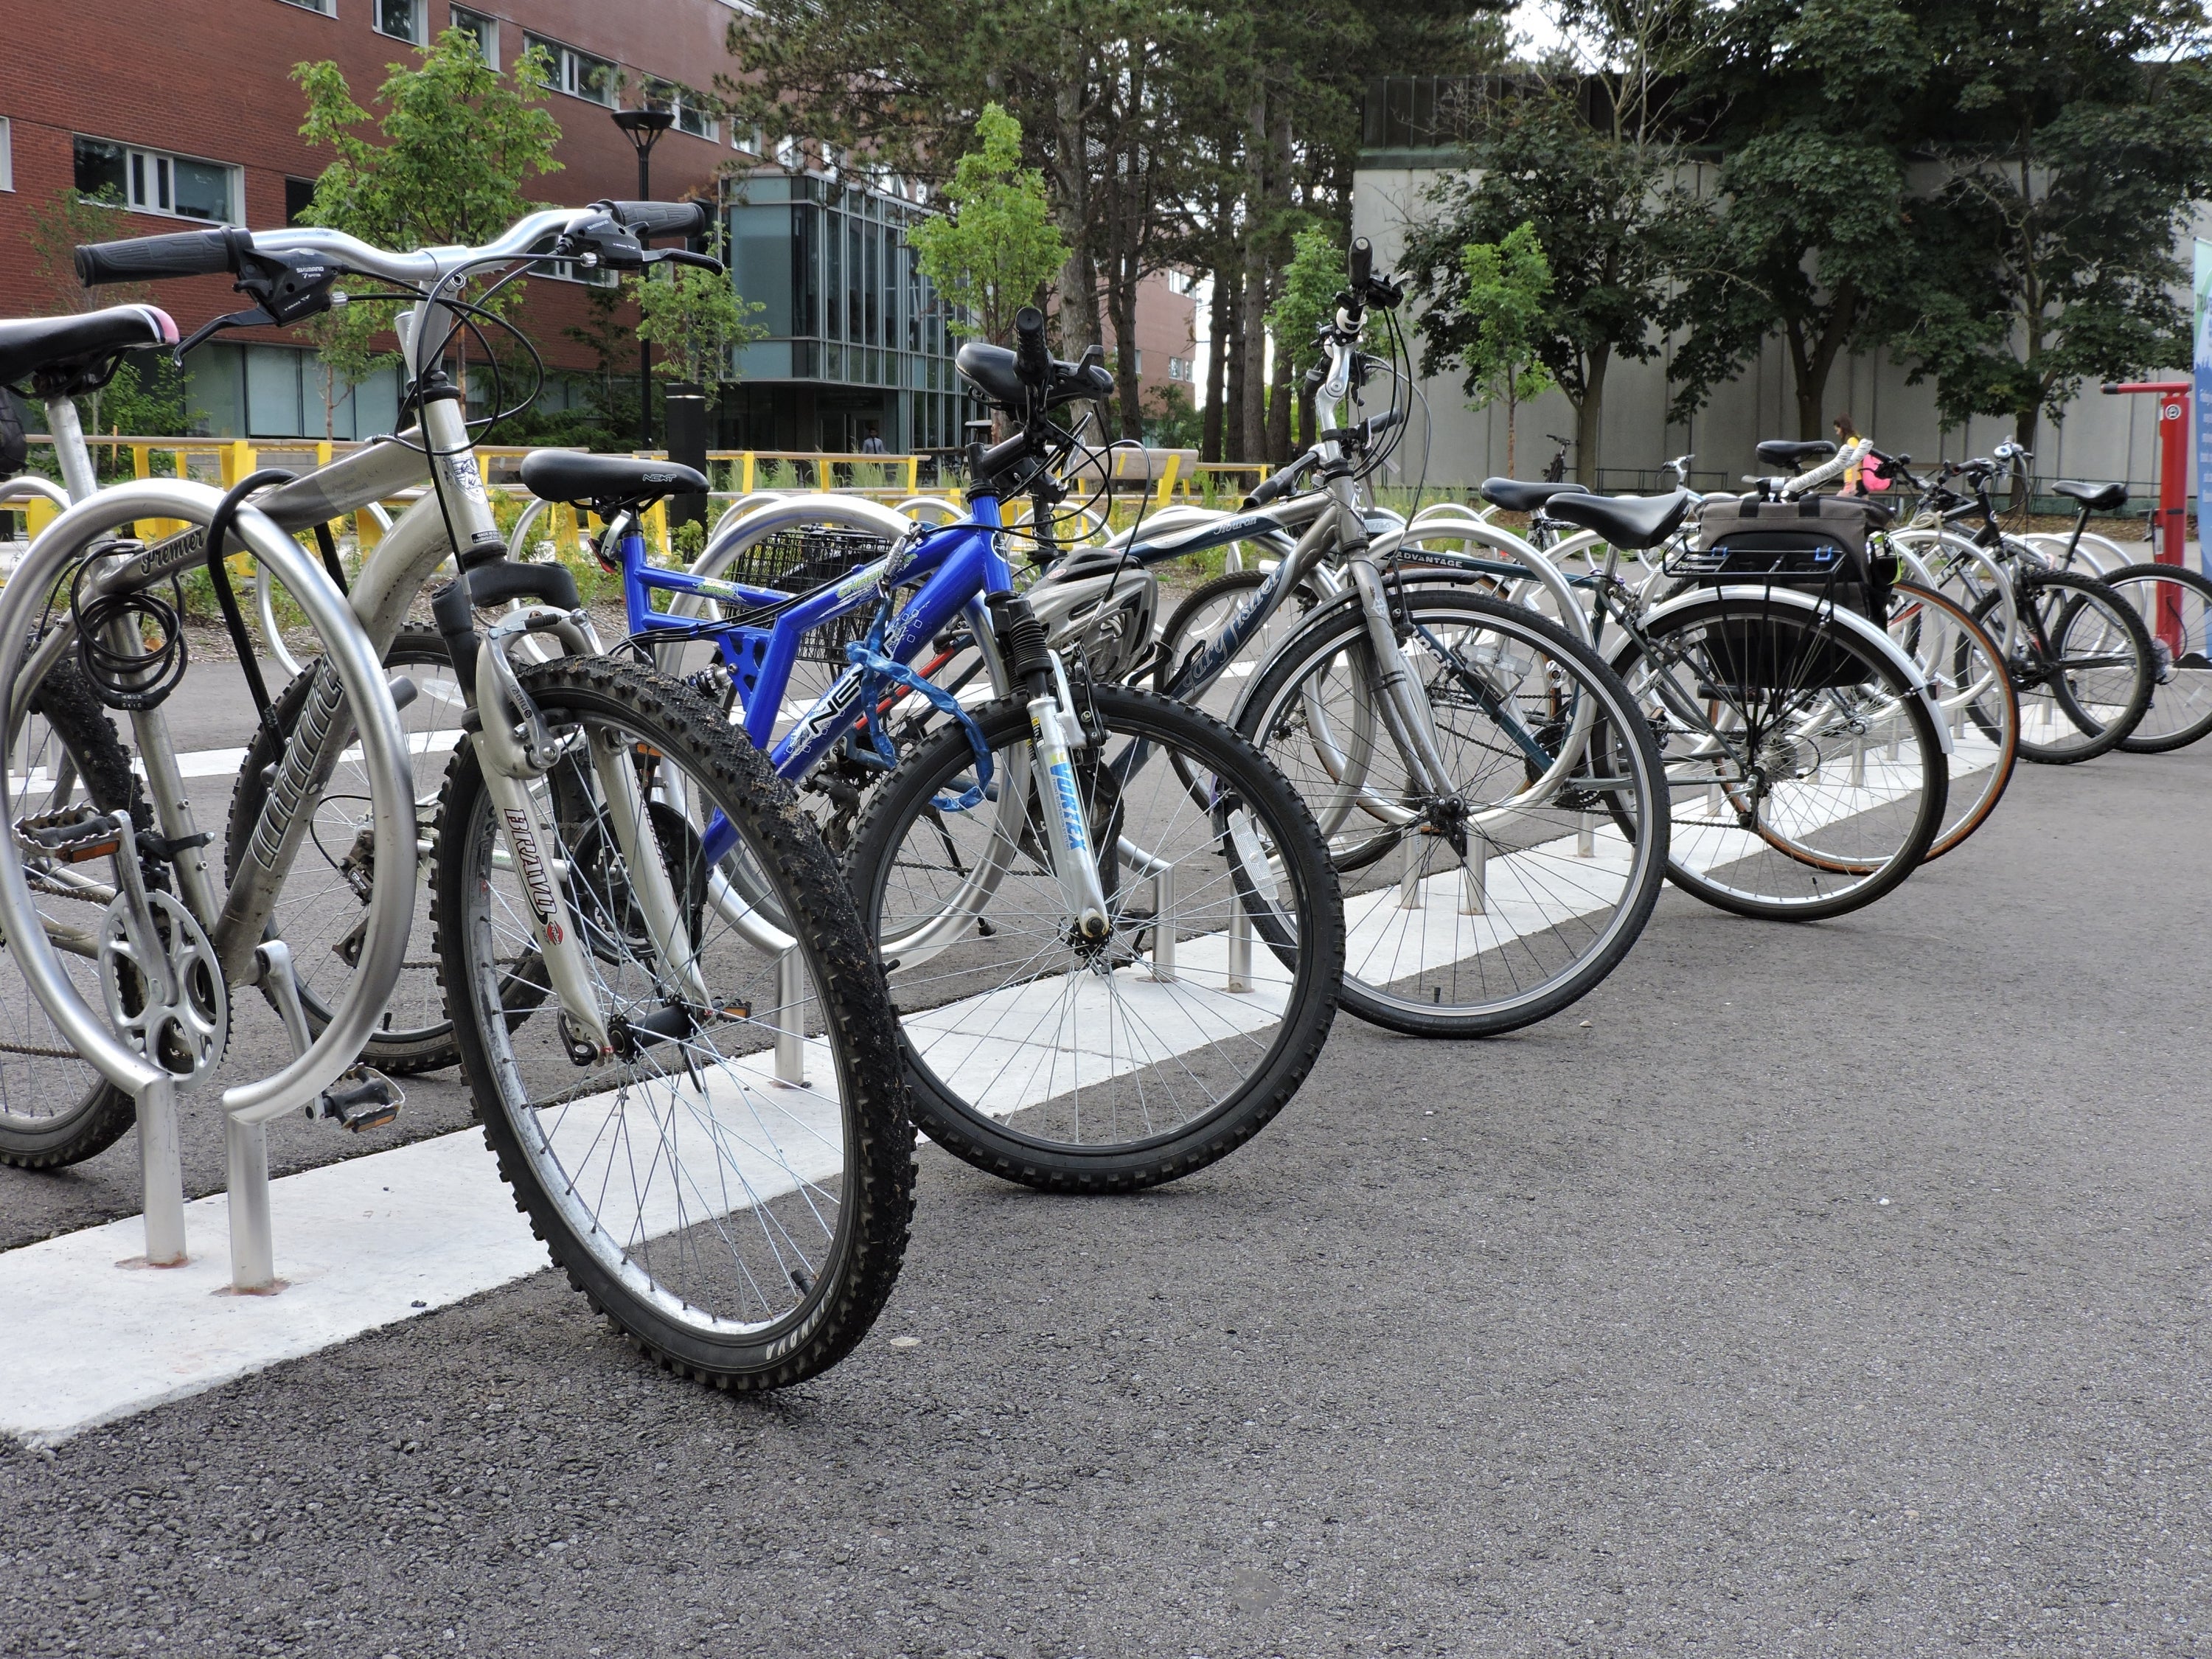 Bikes on bike racks in front of Dana Porter Library